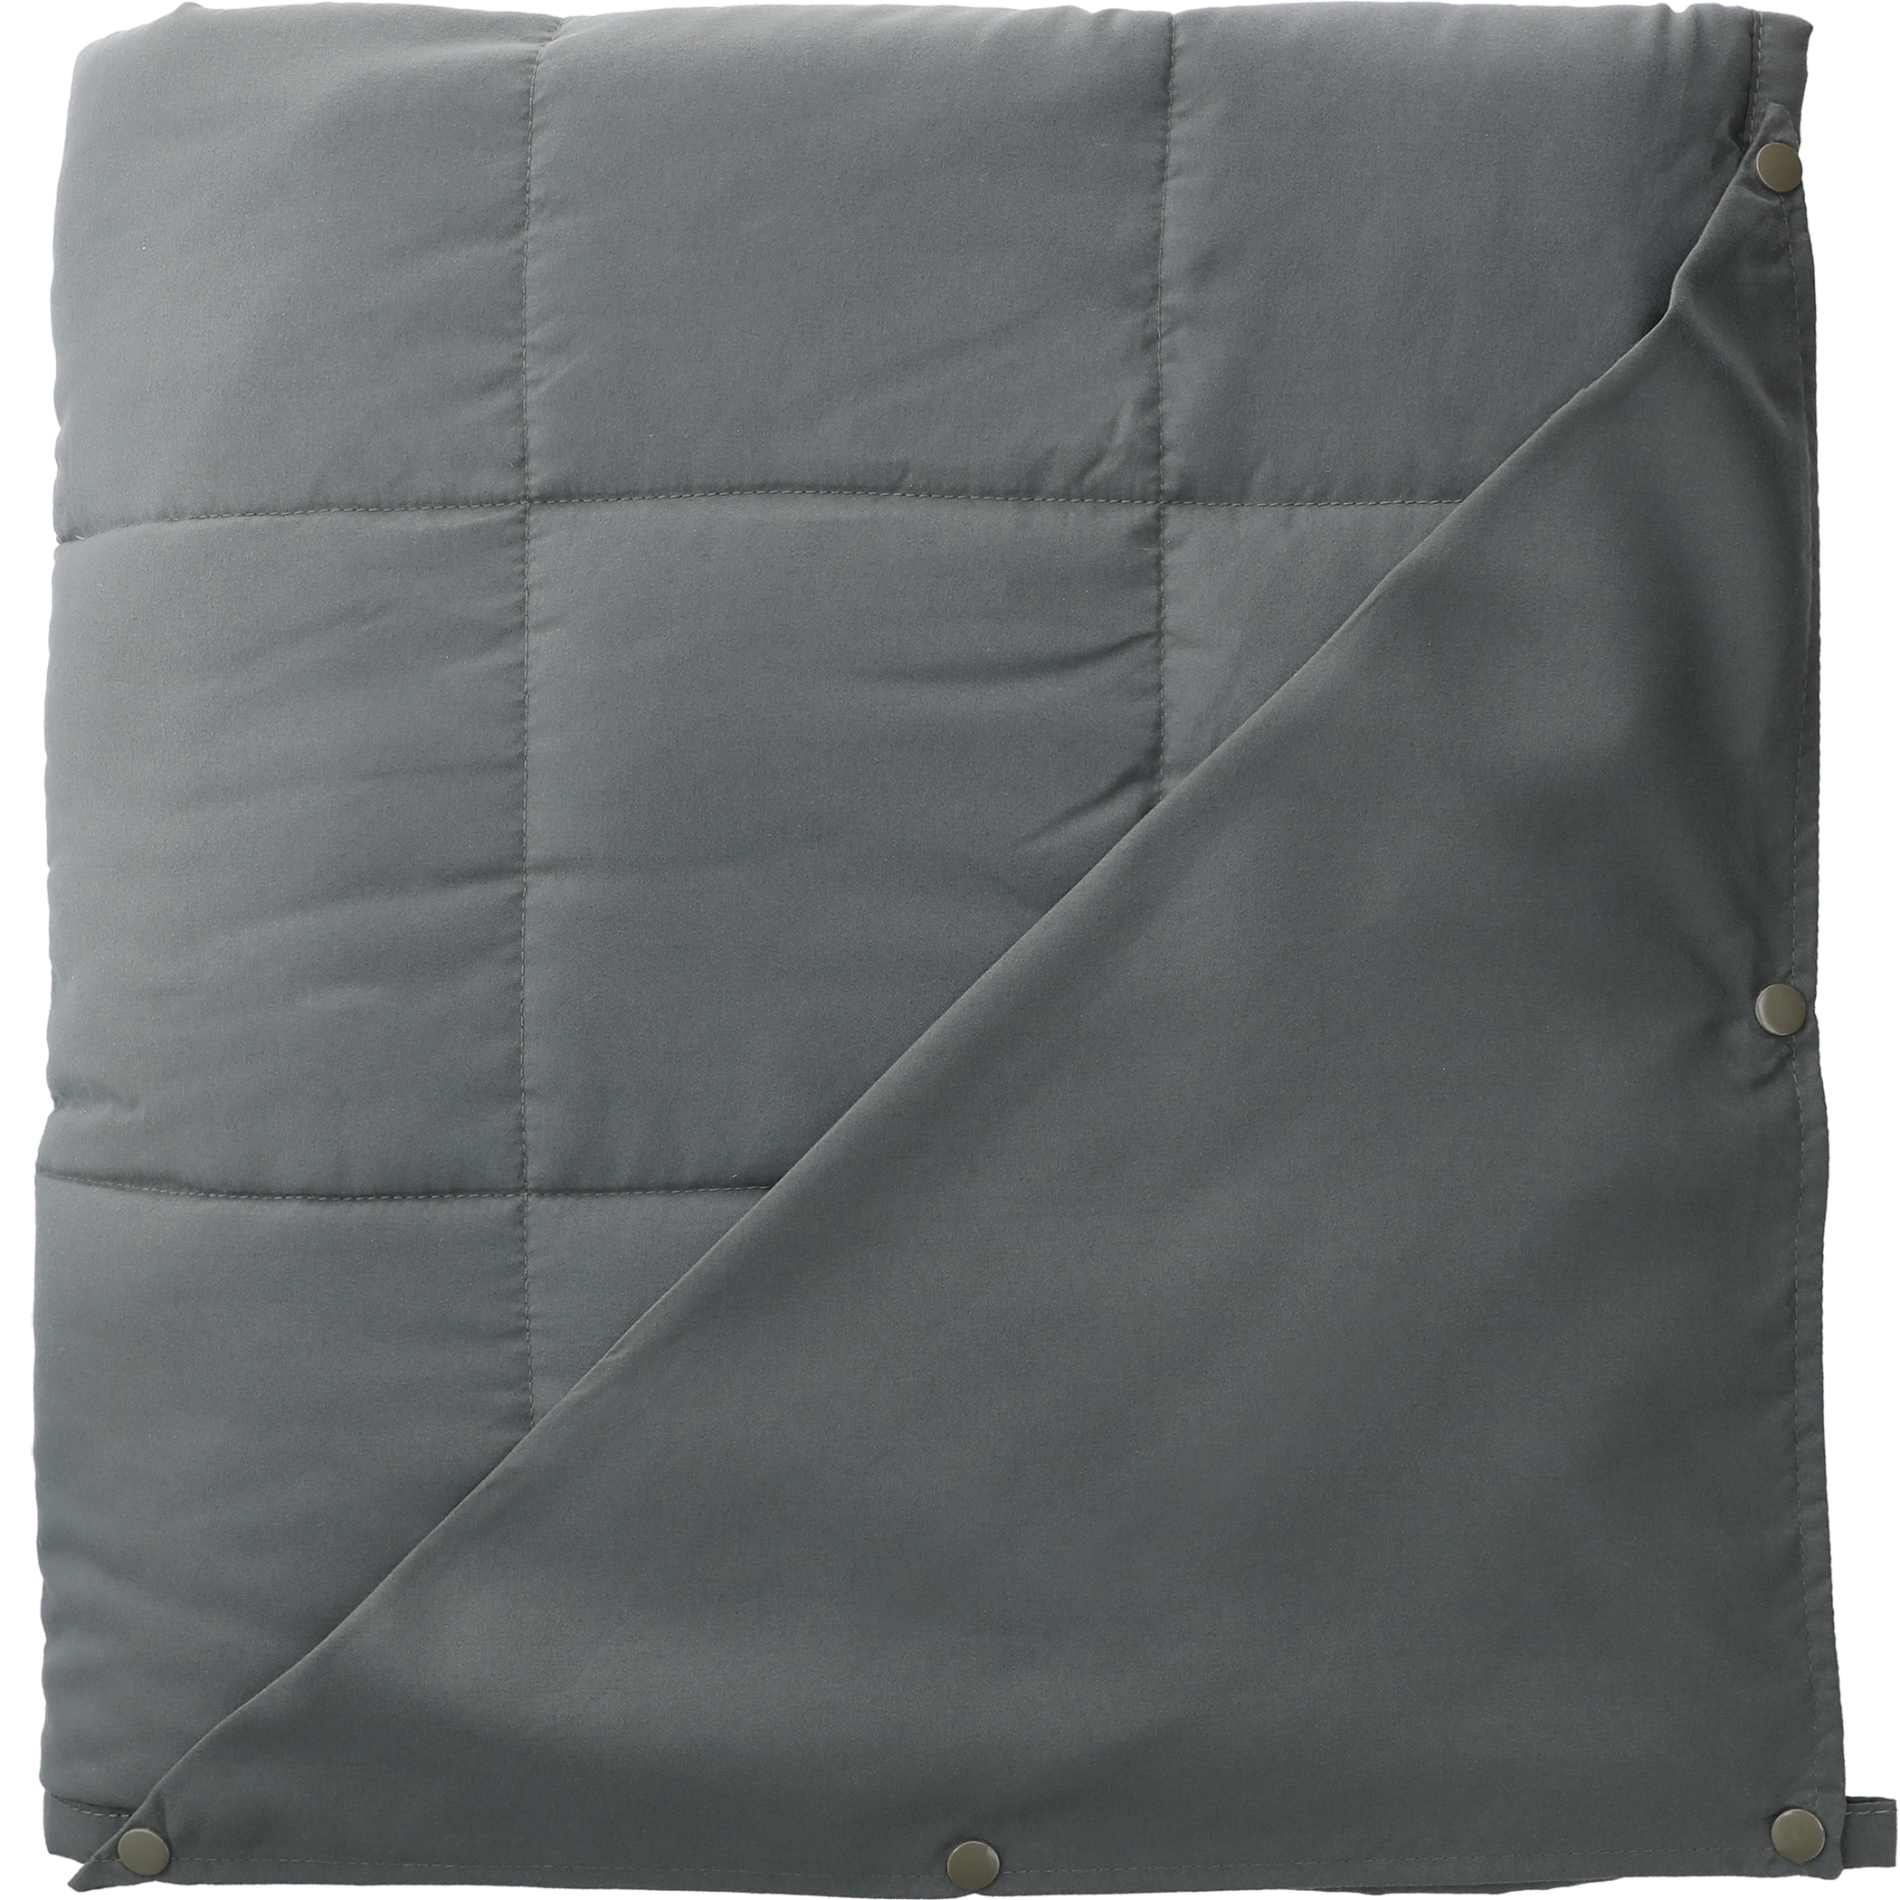 LEEDS 1081-67 - Zen 12lb Weighted Blanket